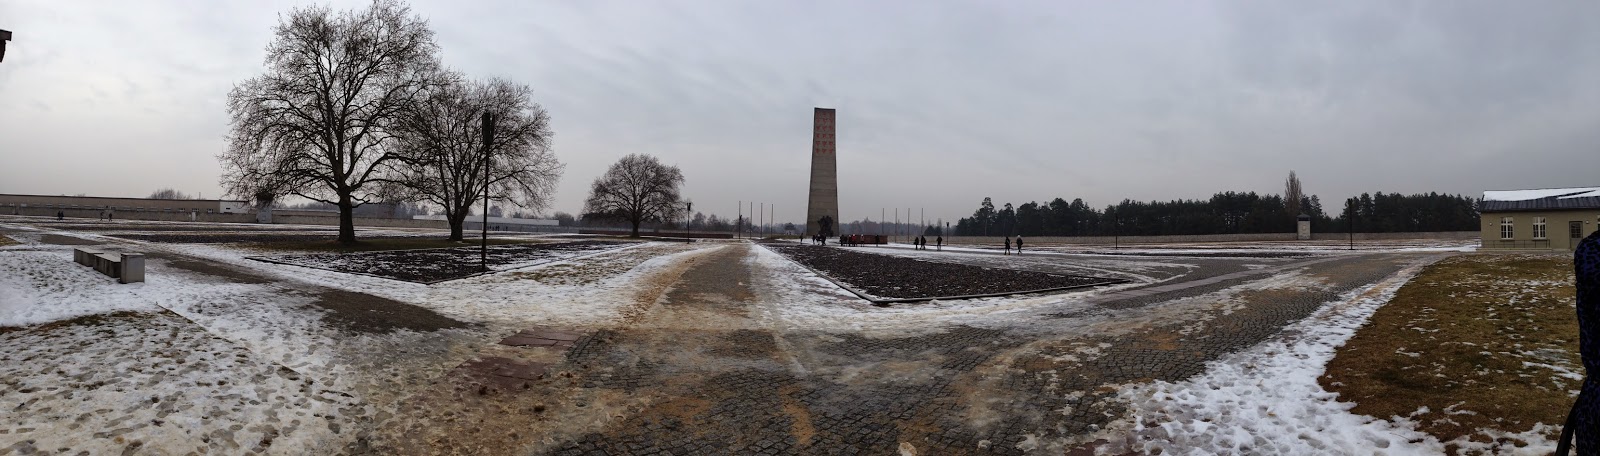 Campo de Concentração, Memorial e Museu Sachsenhausen em Berlim